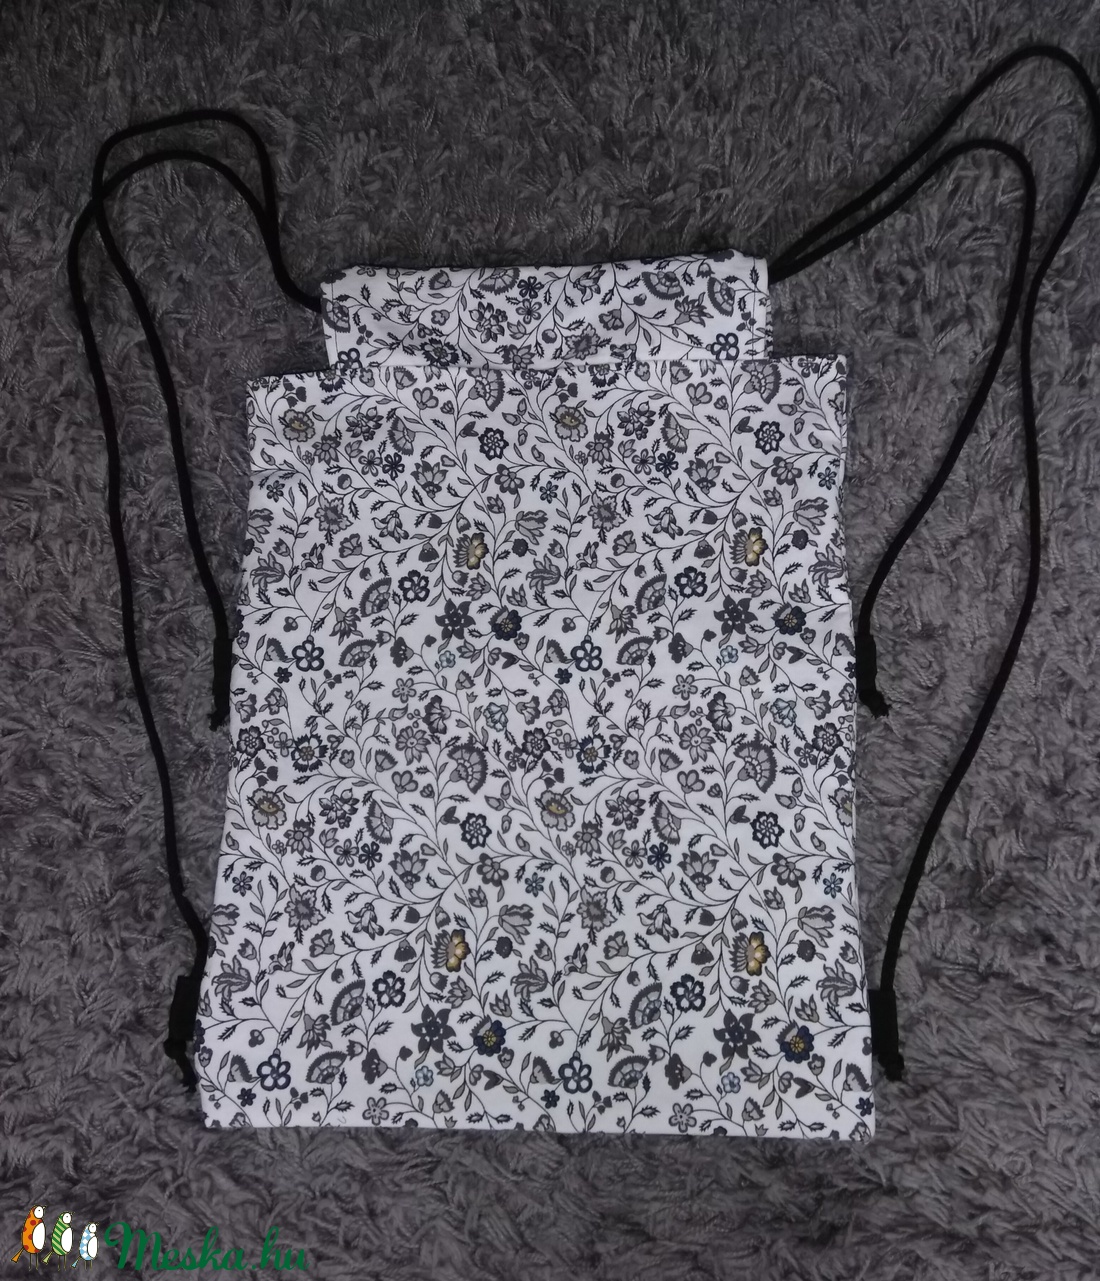 fekete/fehér virág mintás hátizsák -  - Meska.hu